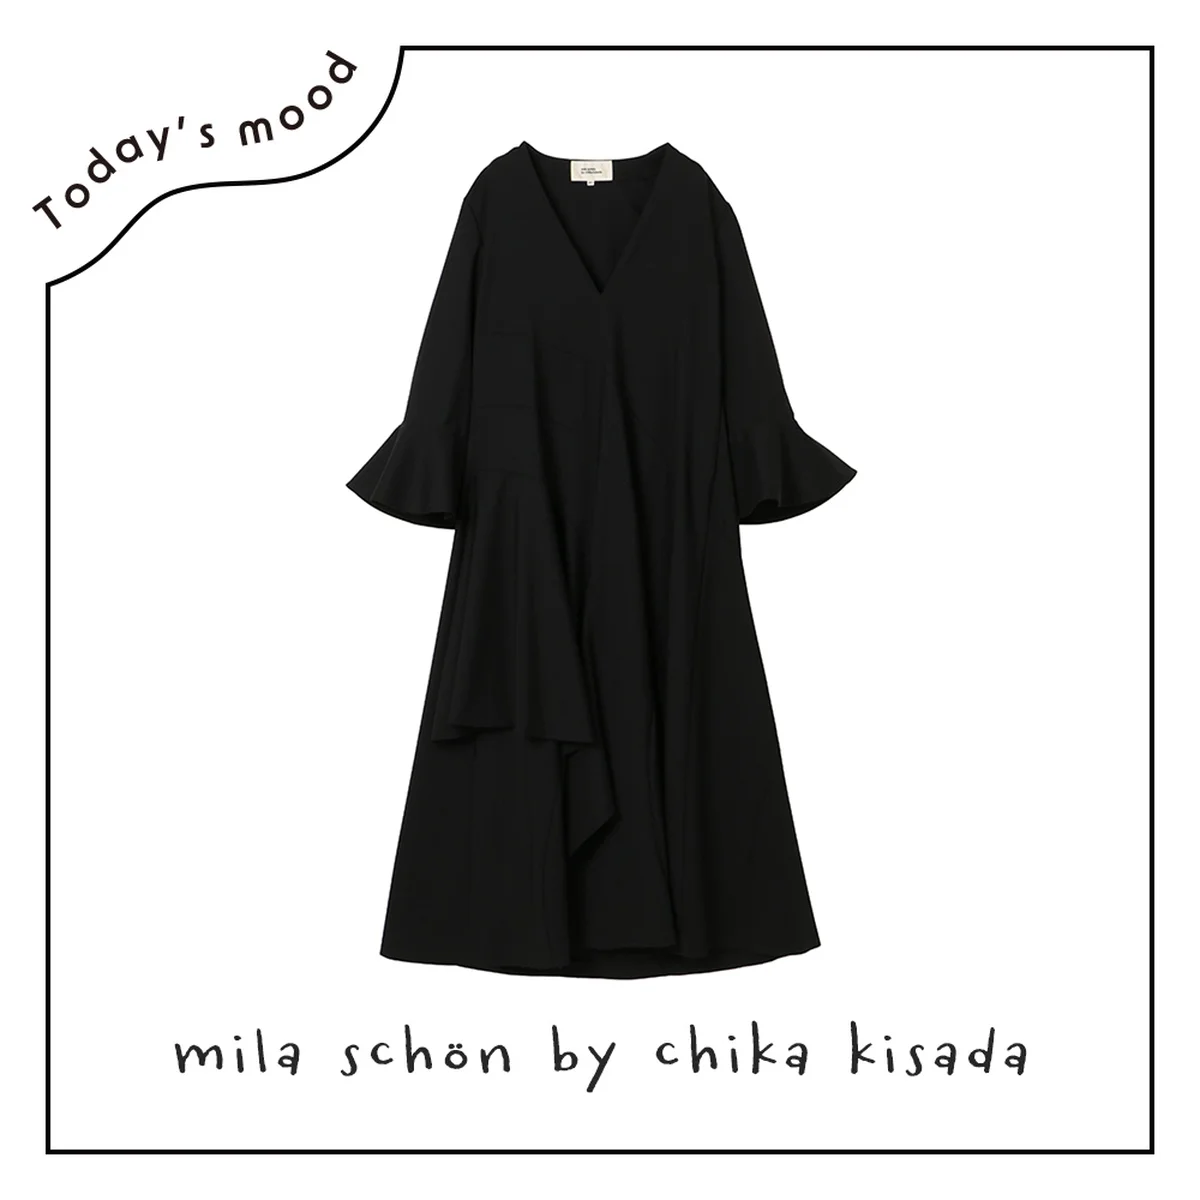 ミラ ショーン バイ チカ キサダのドレス【昼下がりのごきげんワードローブ】